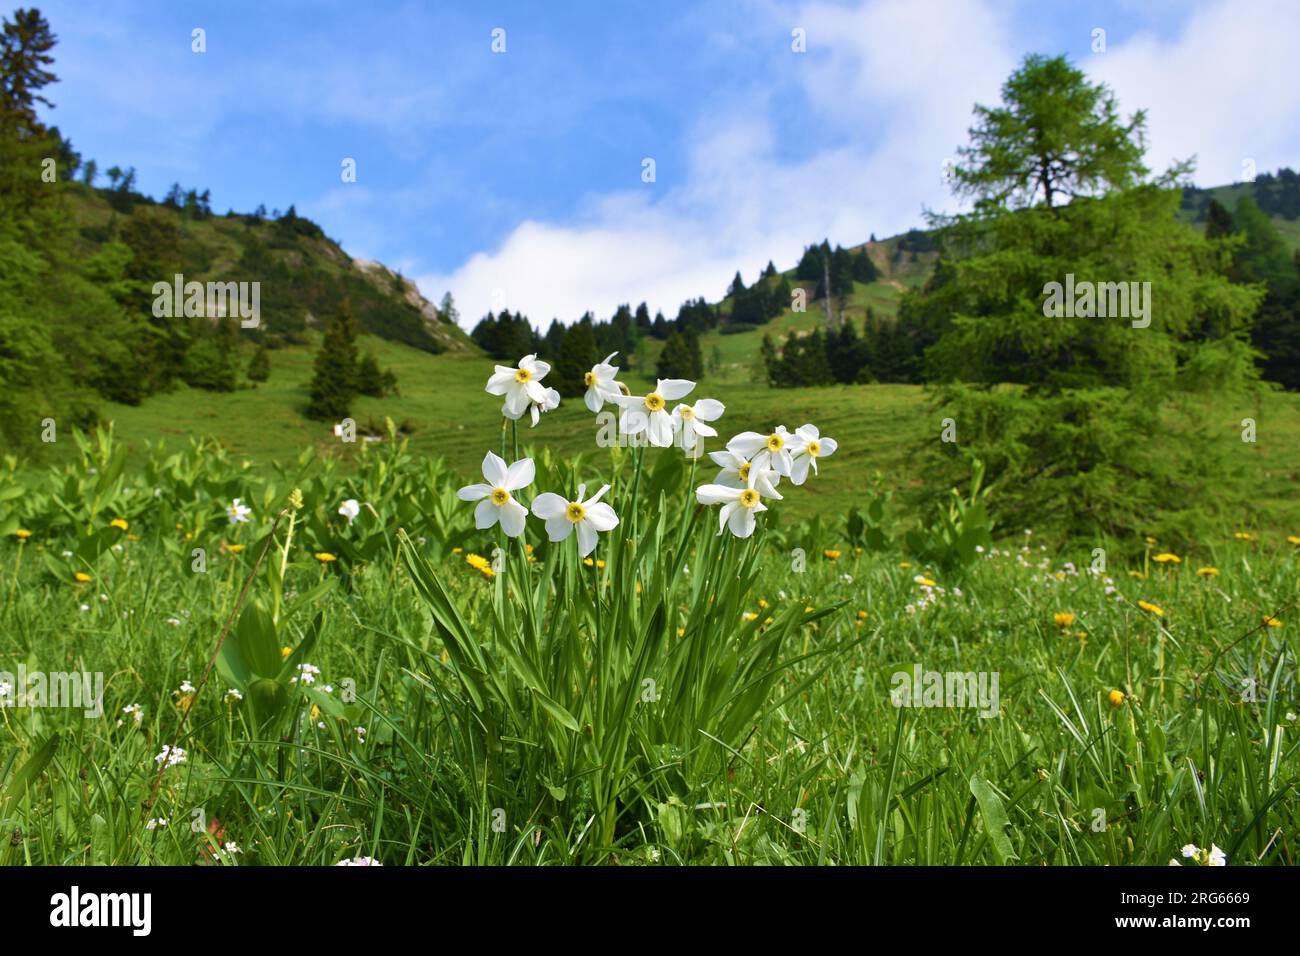 Il narciso del poeta bianco (Narcissus poeticus) fiorisce su un pendio a Hruski vrh nelle montagne del Karavanke, Gorenjska, Slovenia Foto Stock